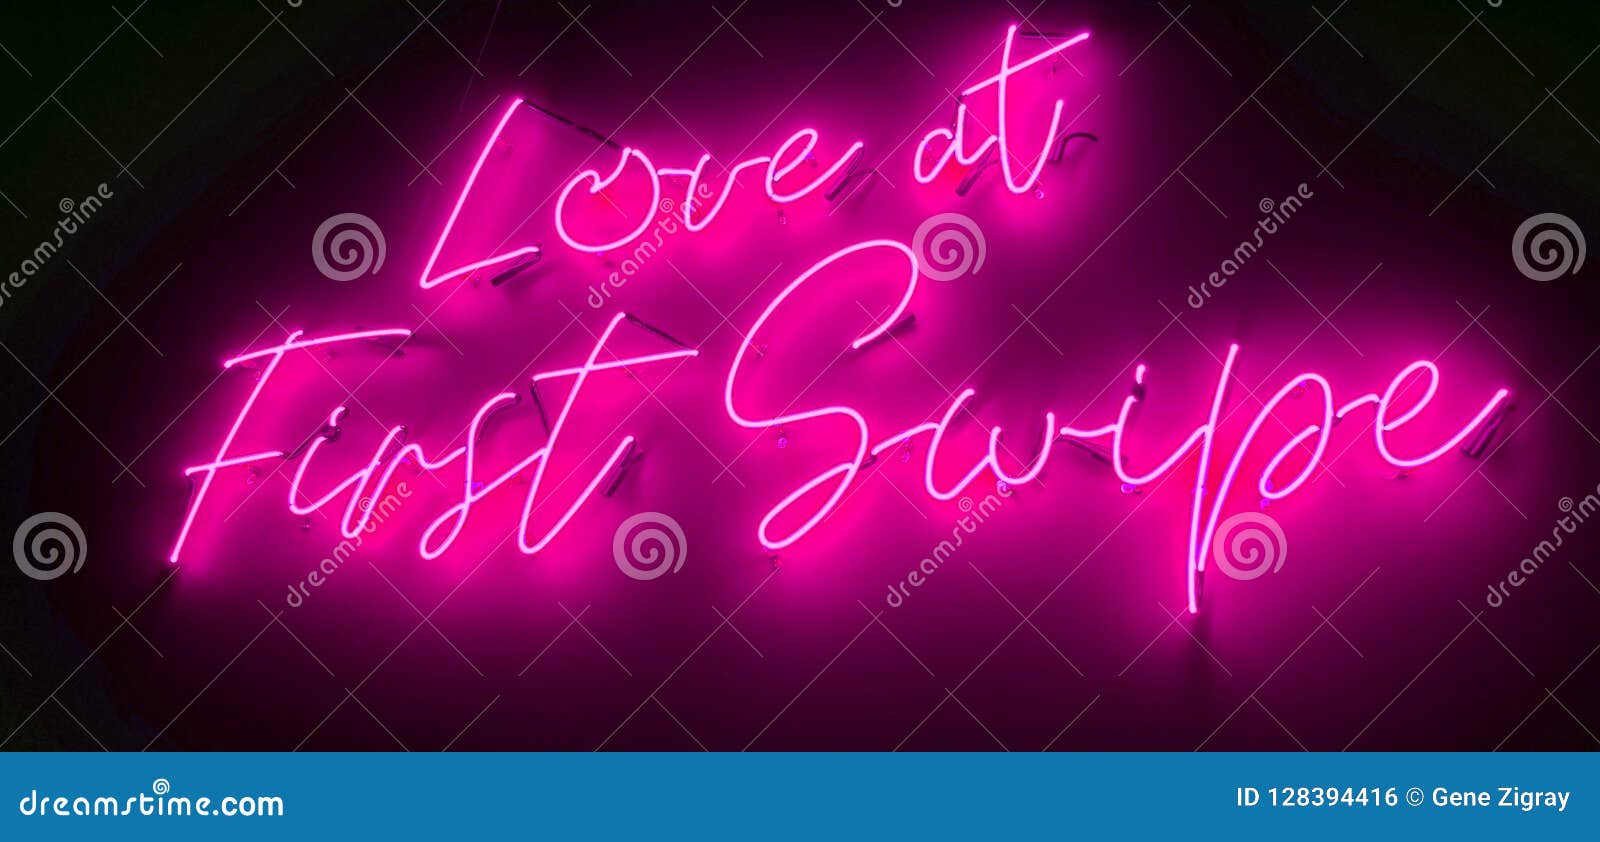 online dating neon